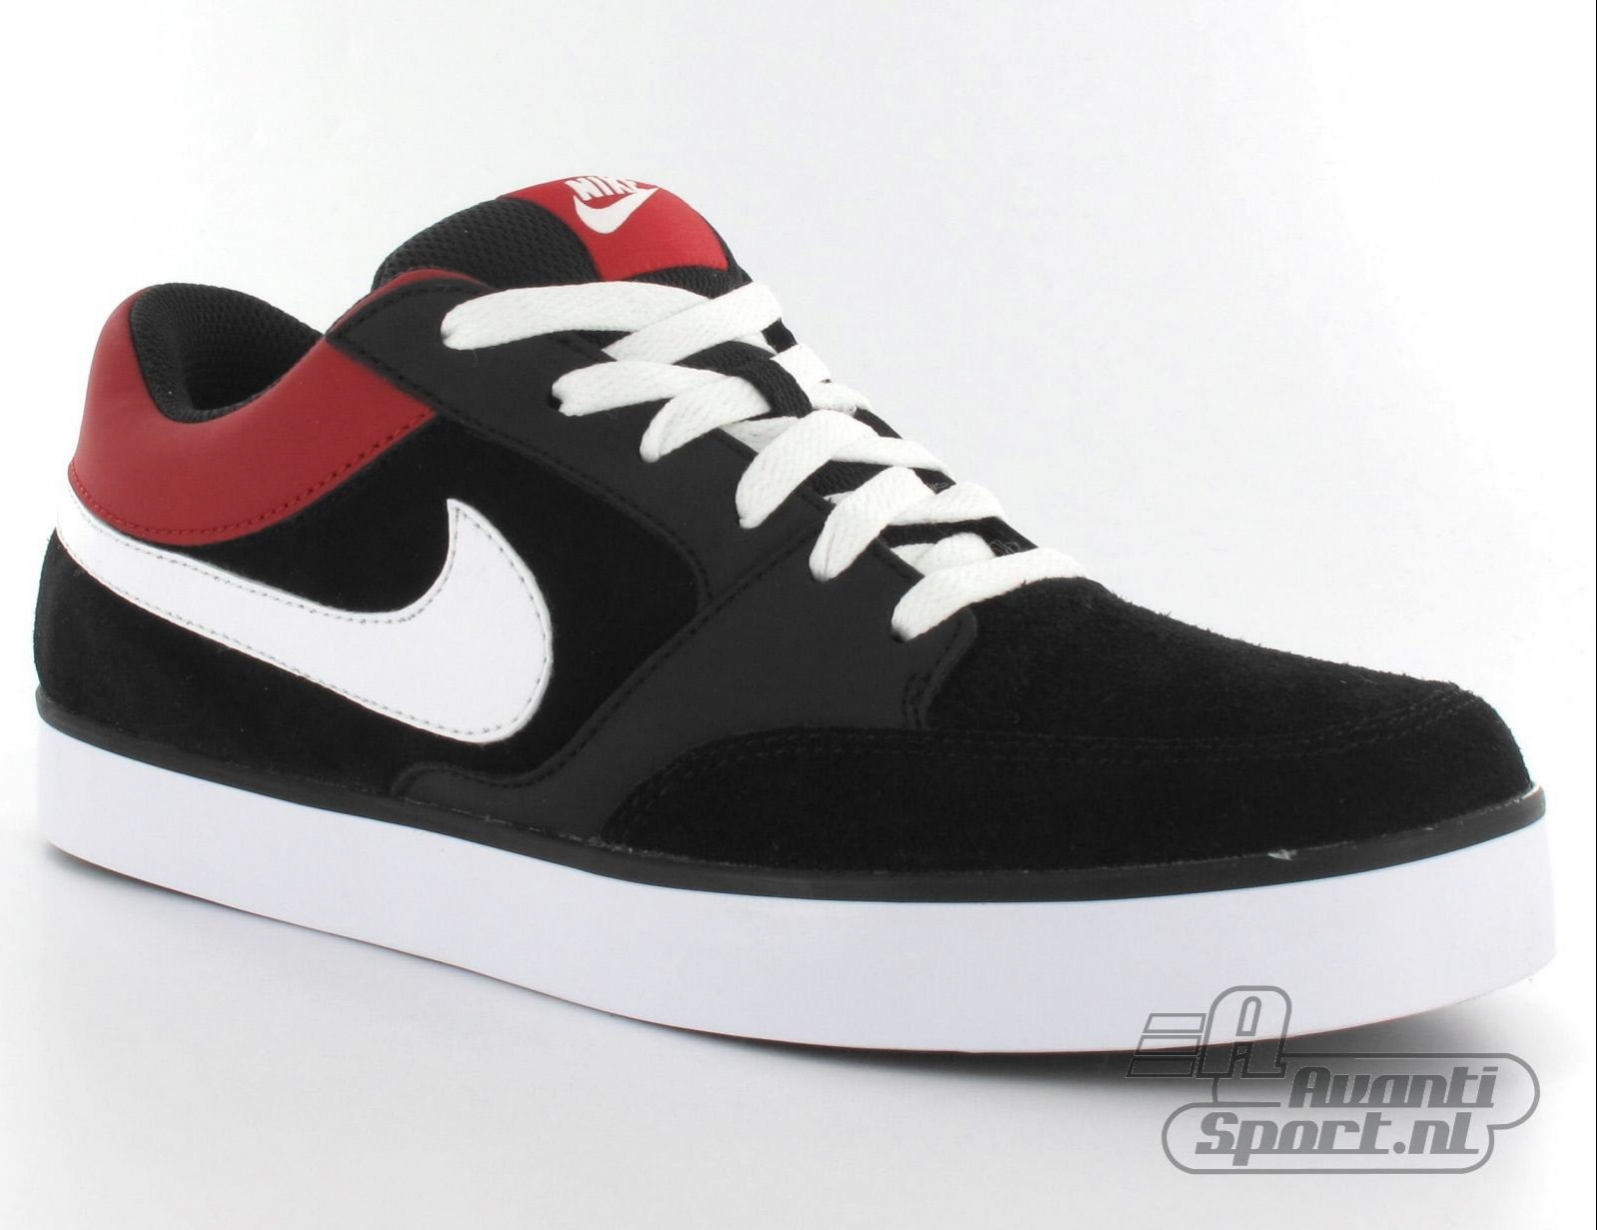 Avantisport - Nike - Avid - Sneakers Voor Heren